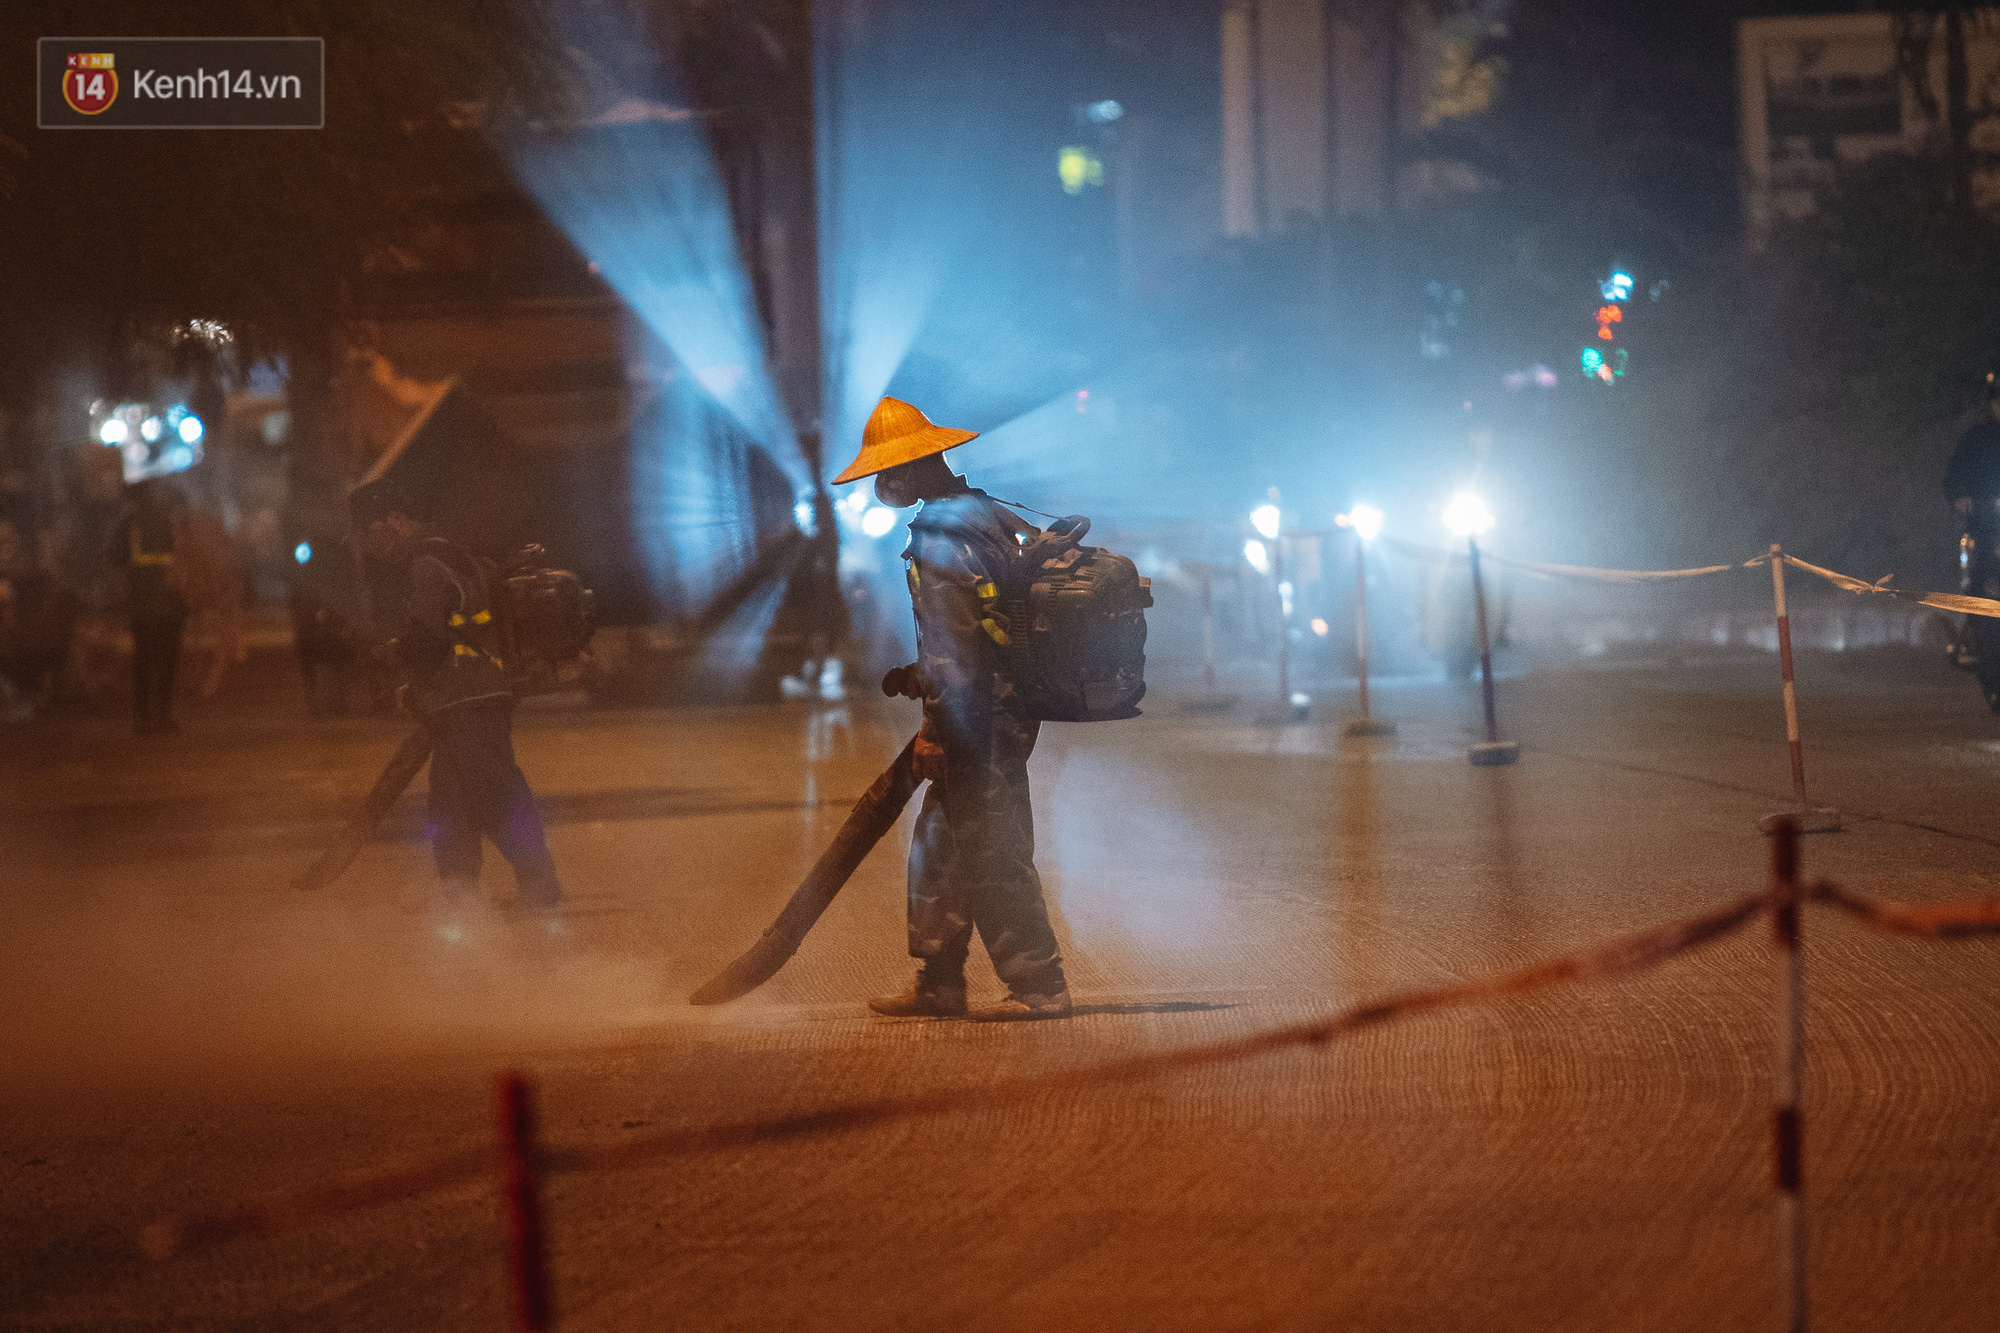 Hà Nội có lẽ bụi nhất về đêm: Nhóm công nhân sửa đường thổi bụi thẳng vào mặt người dân - Ảnh 3.